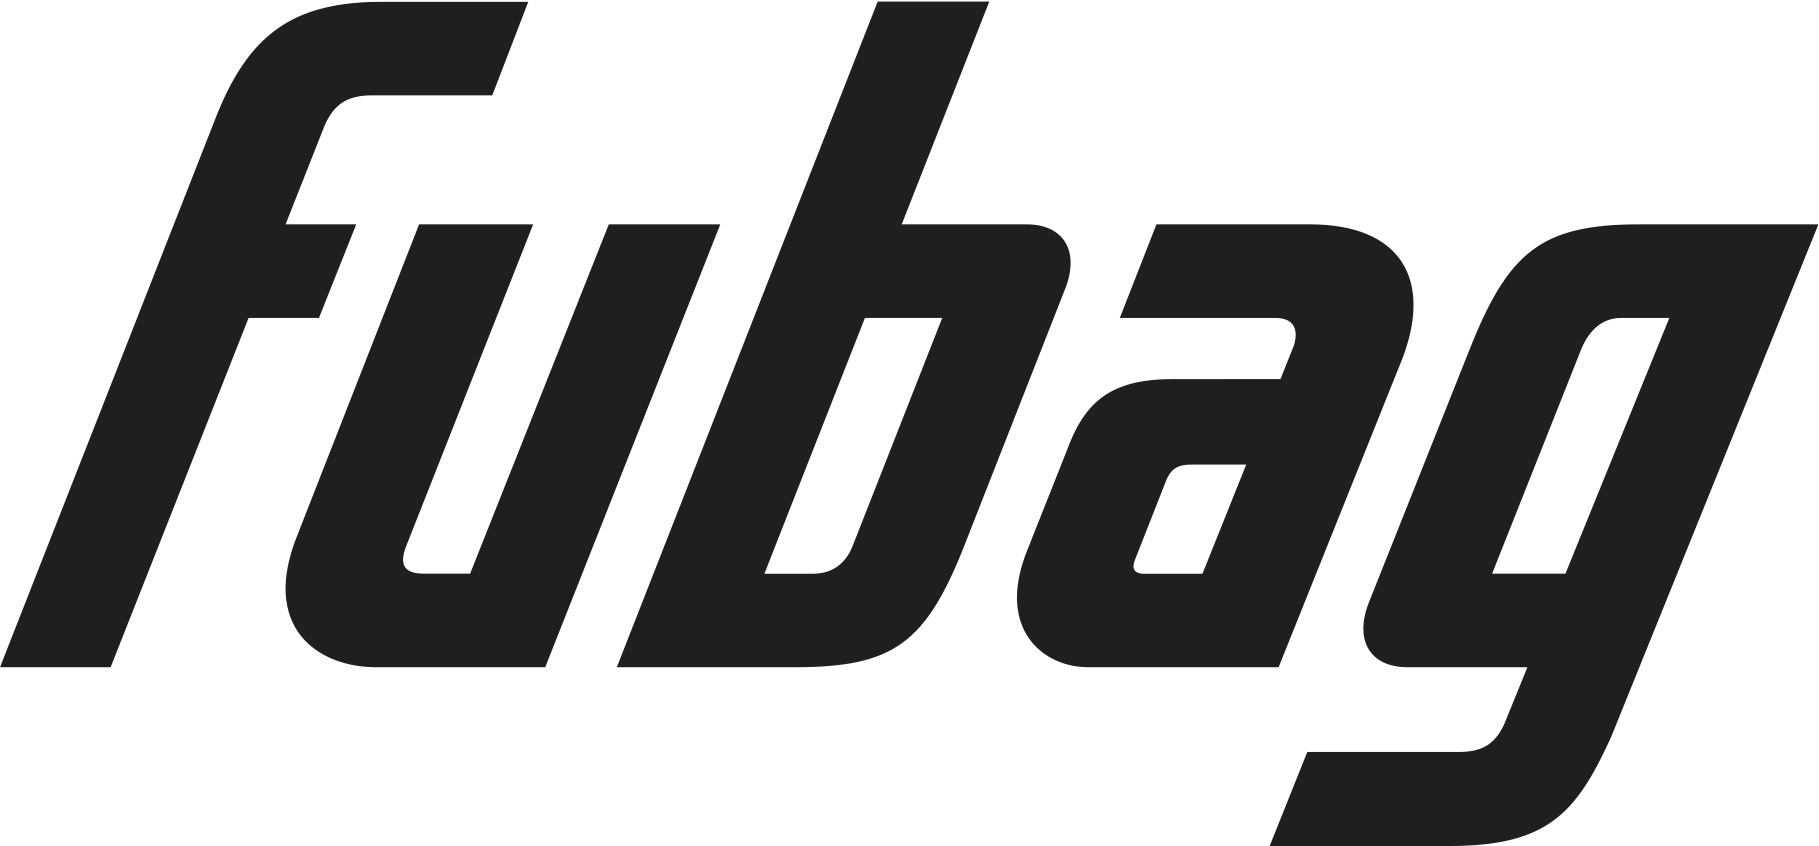 Компания FUBAG провела ребрендинг своей торговой марки